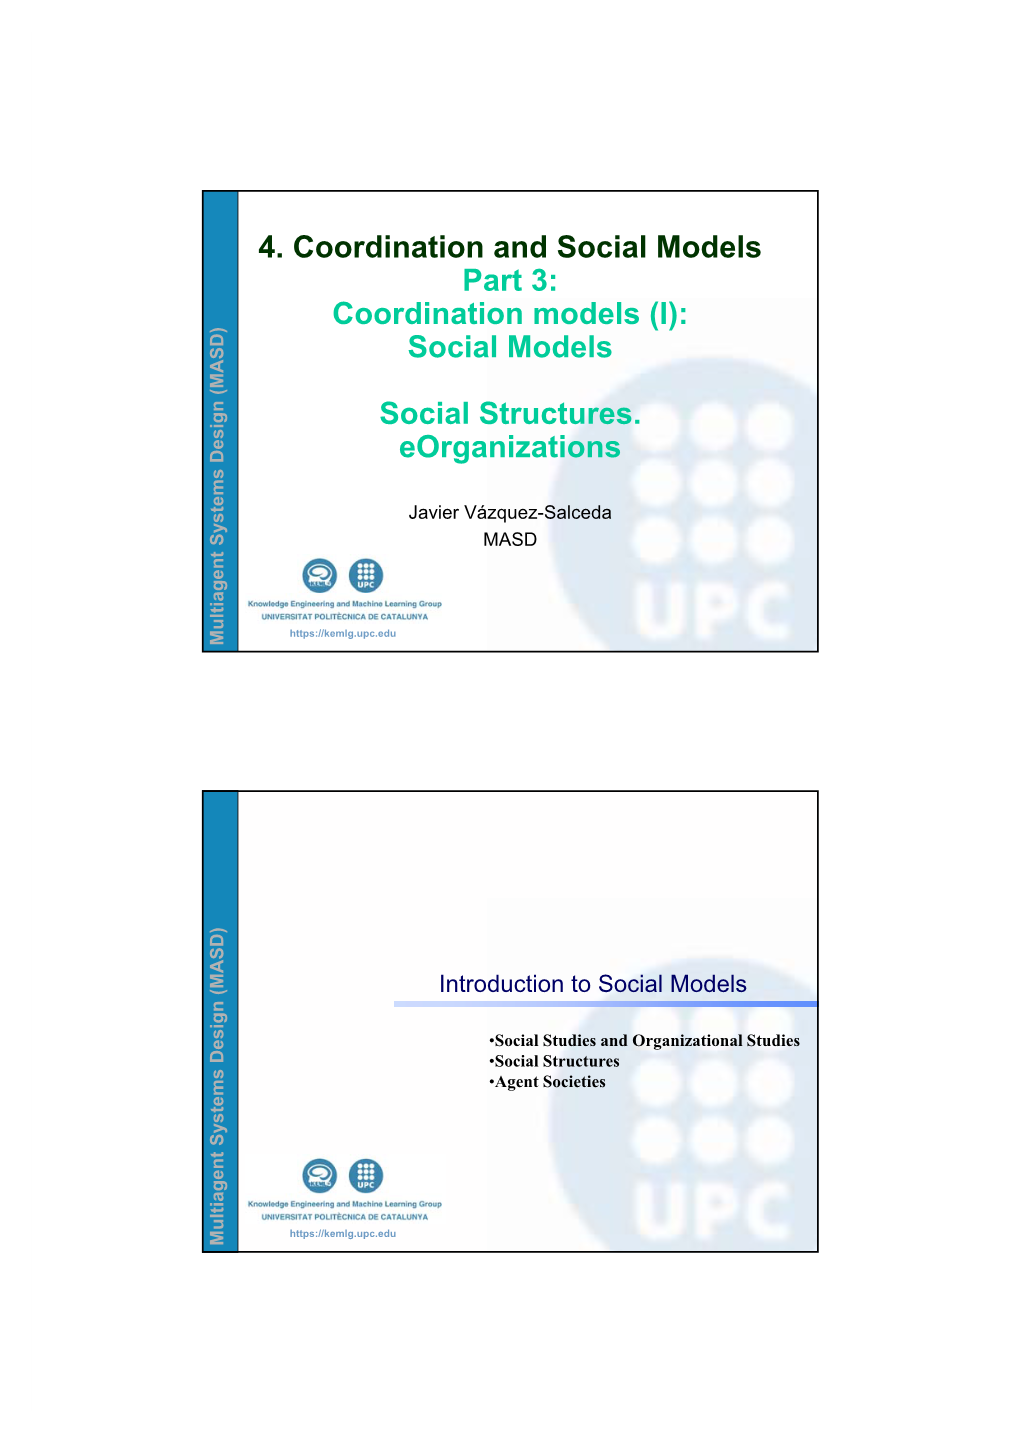 (I): Social Models Social Structures. Eorganizations